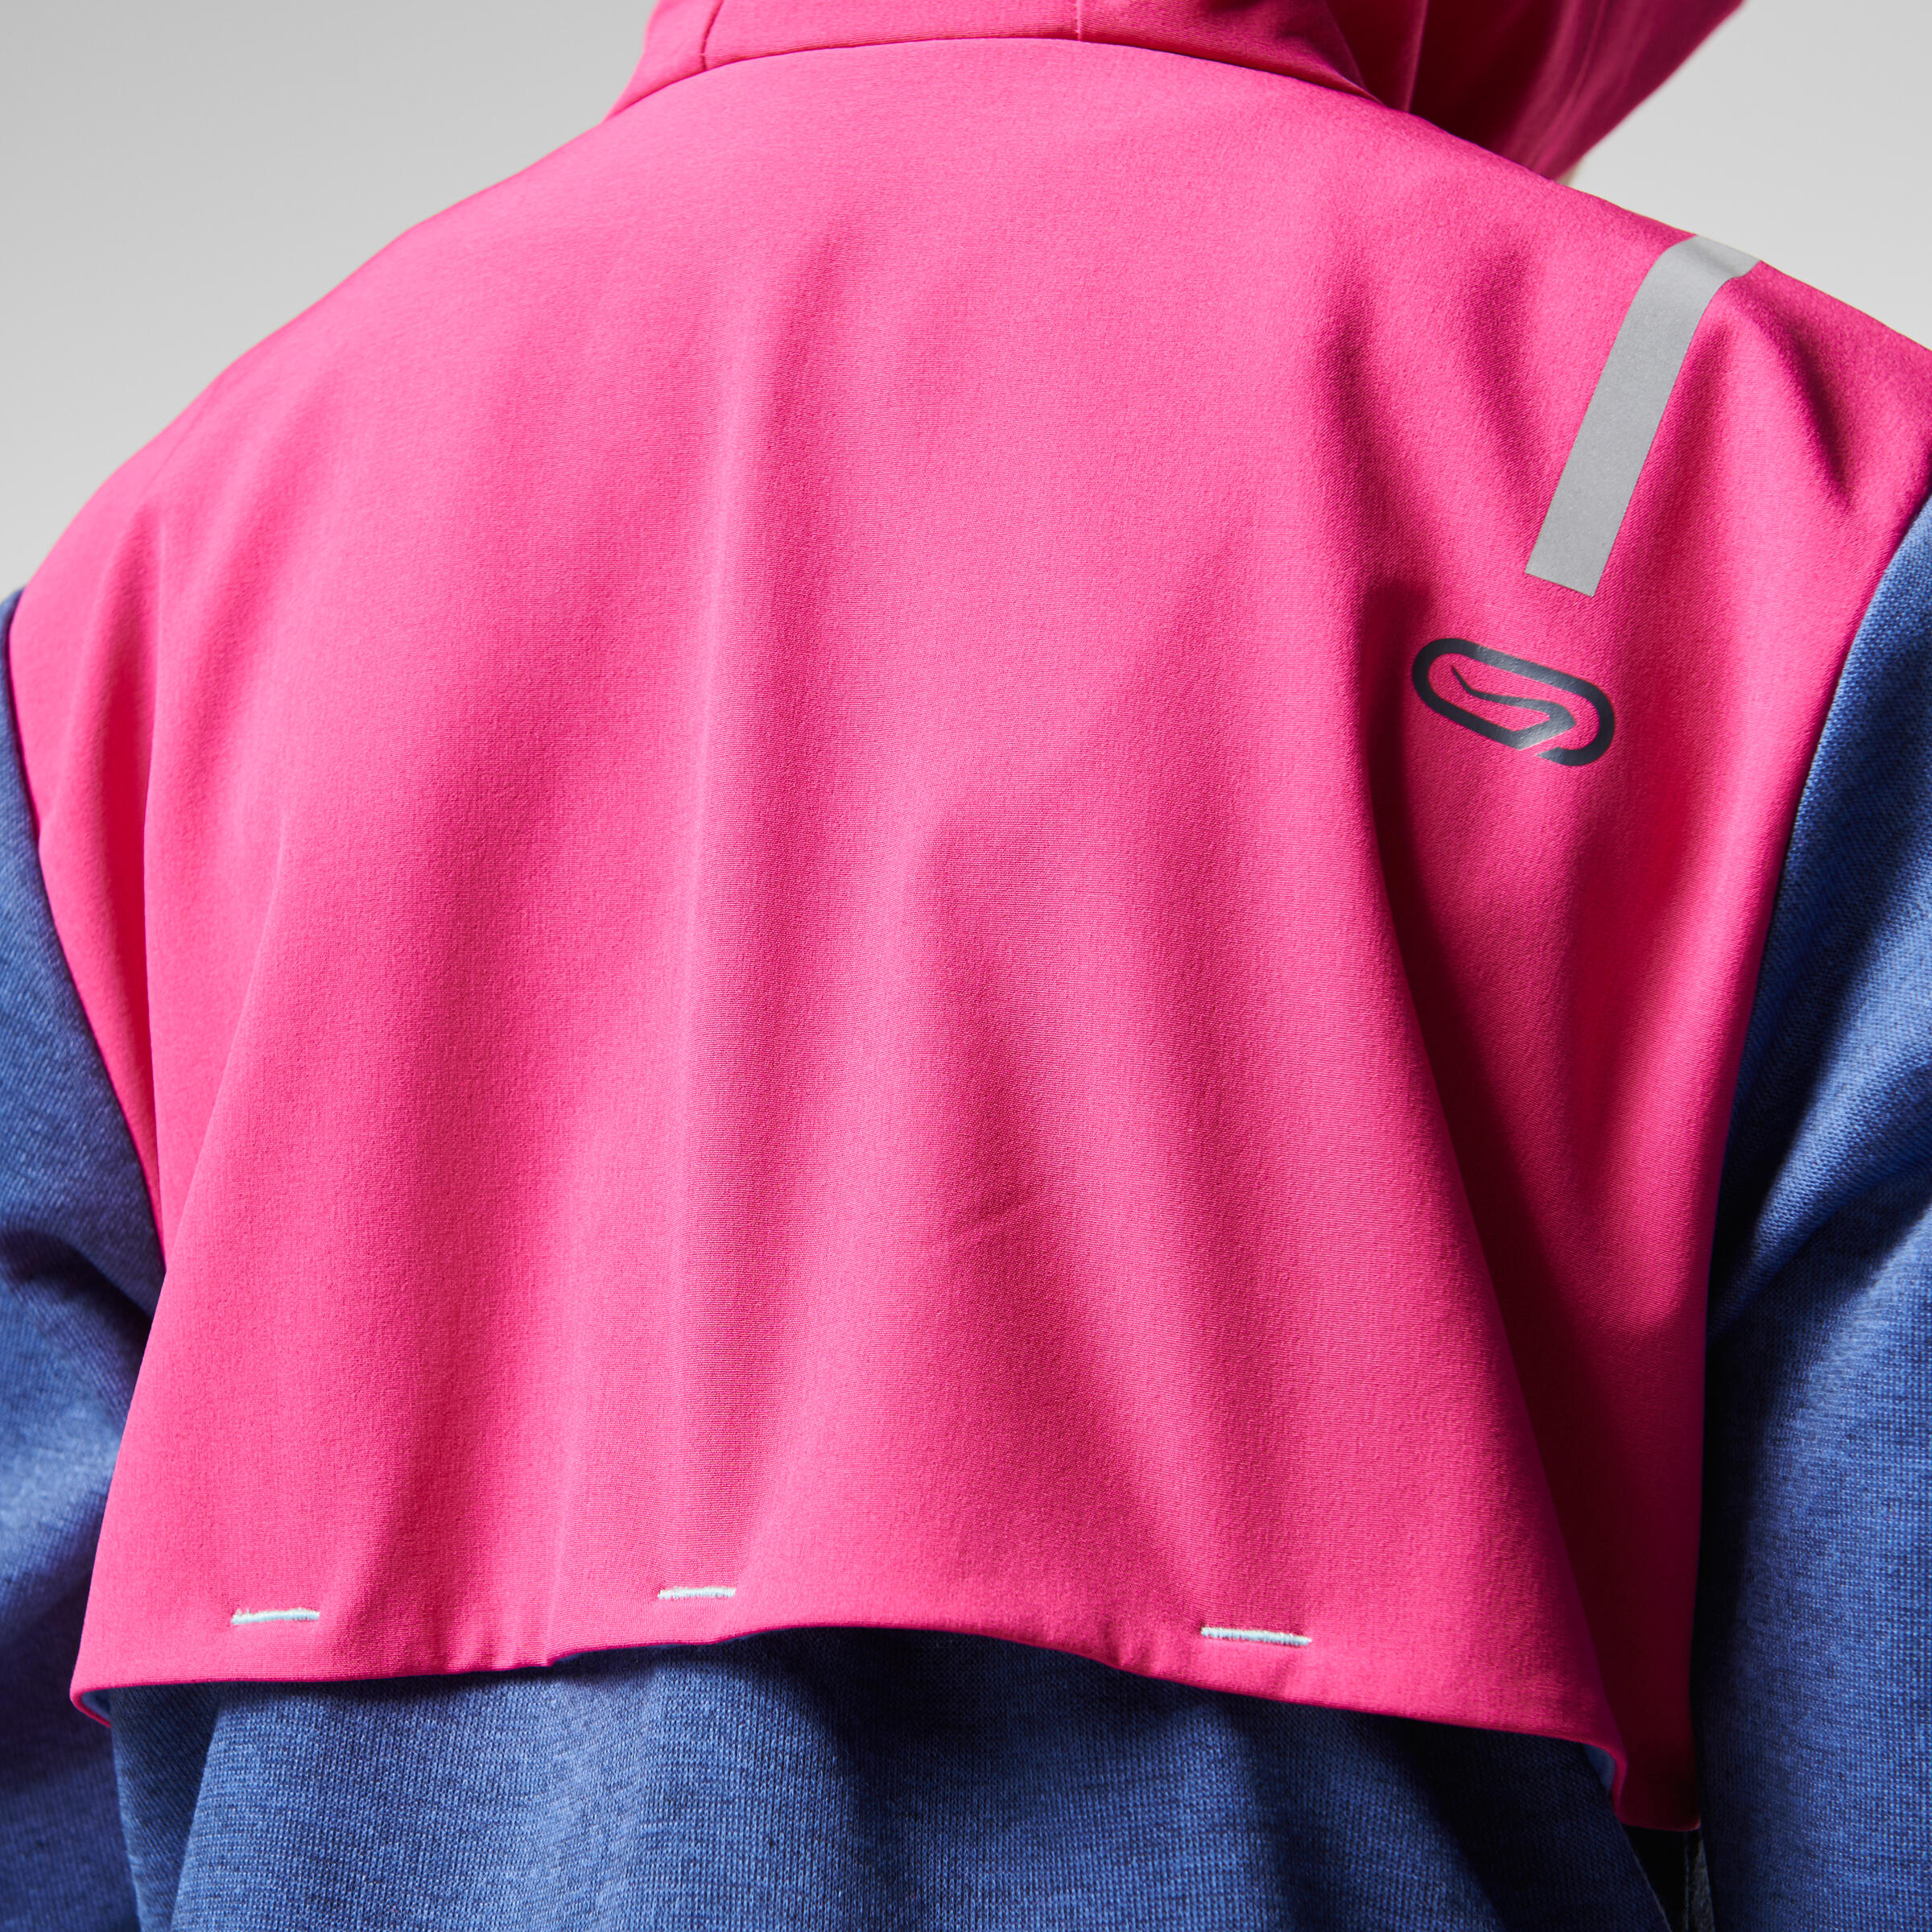 Elio Children's Running Hooded Jersey - Pink/Blue
 12/16